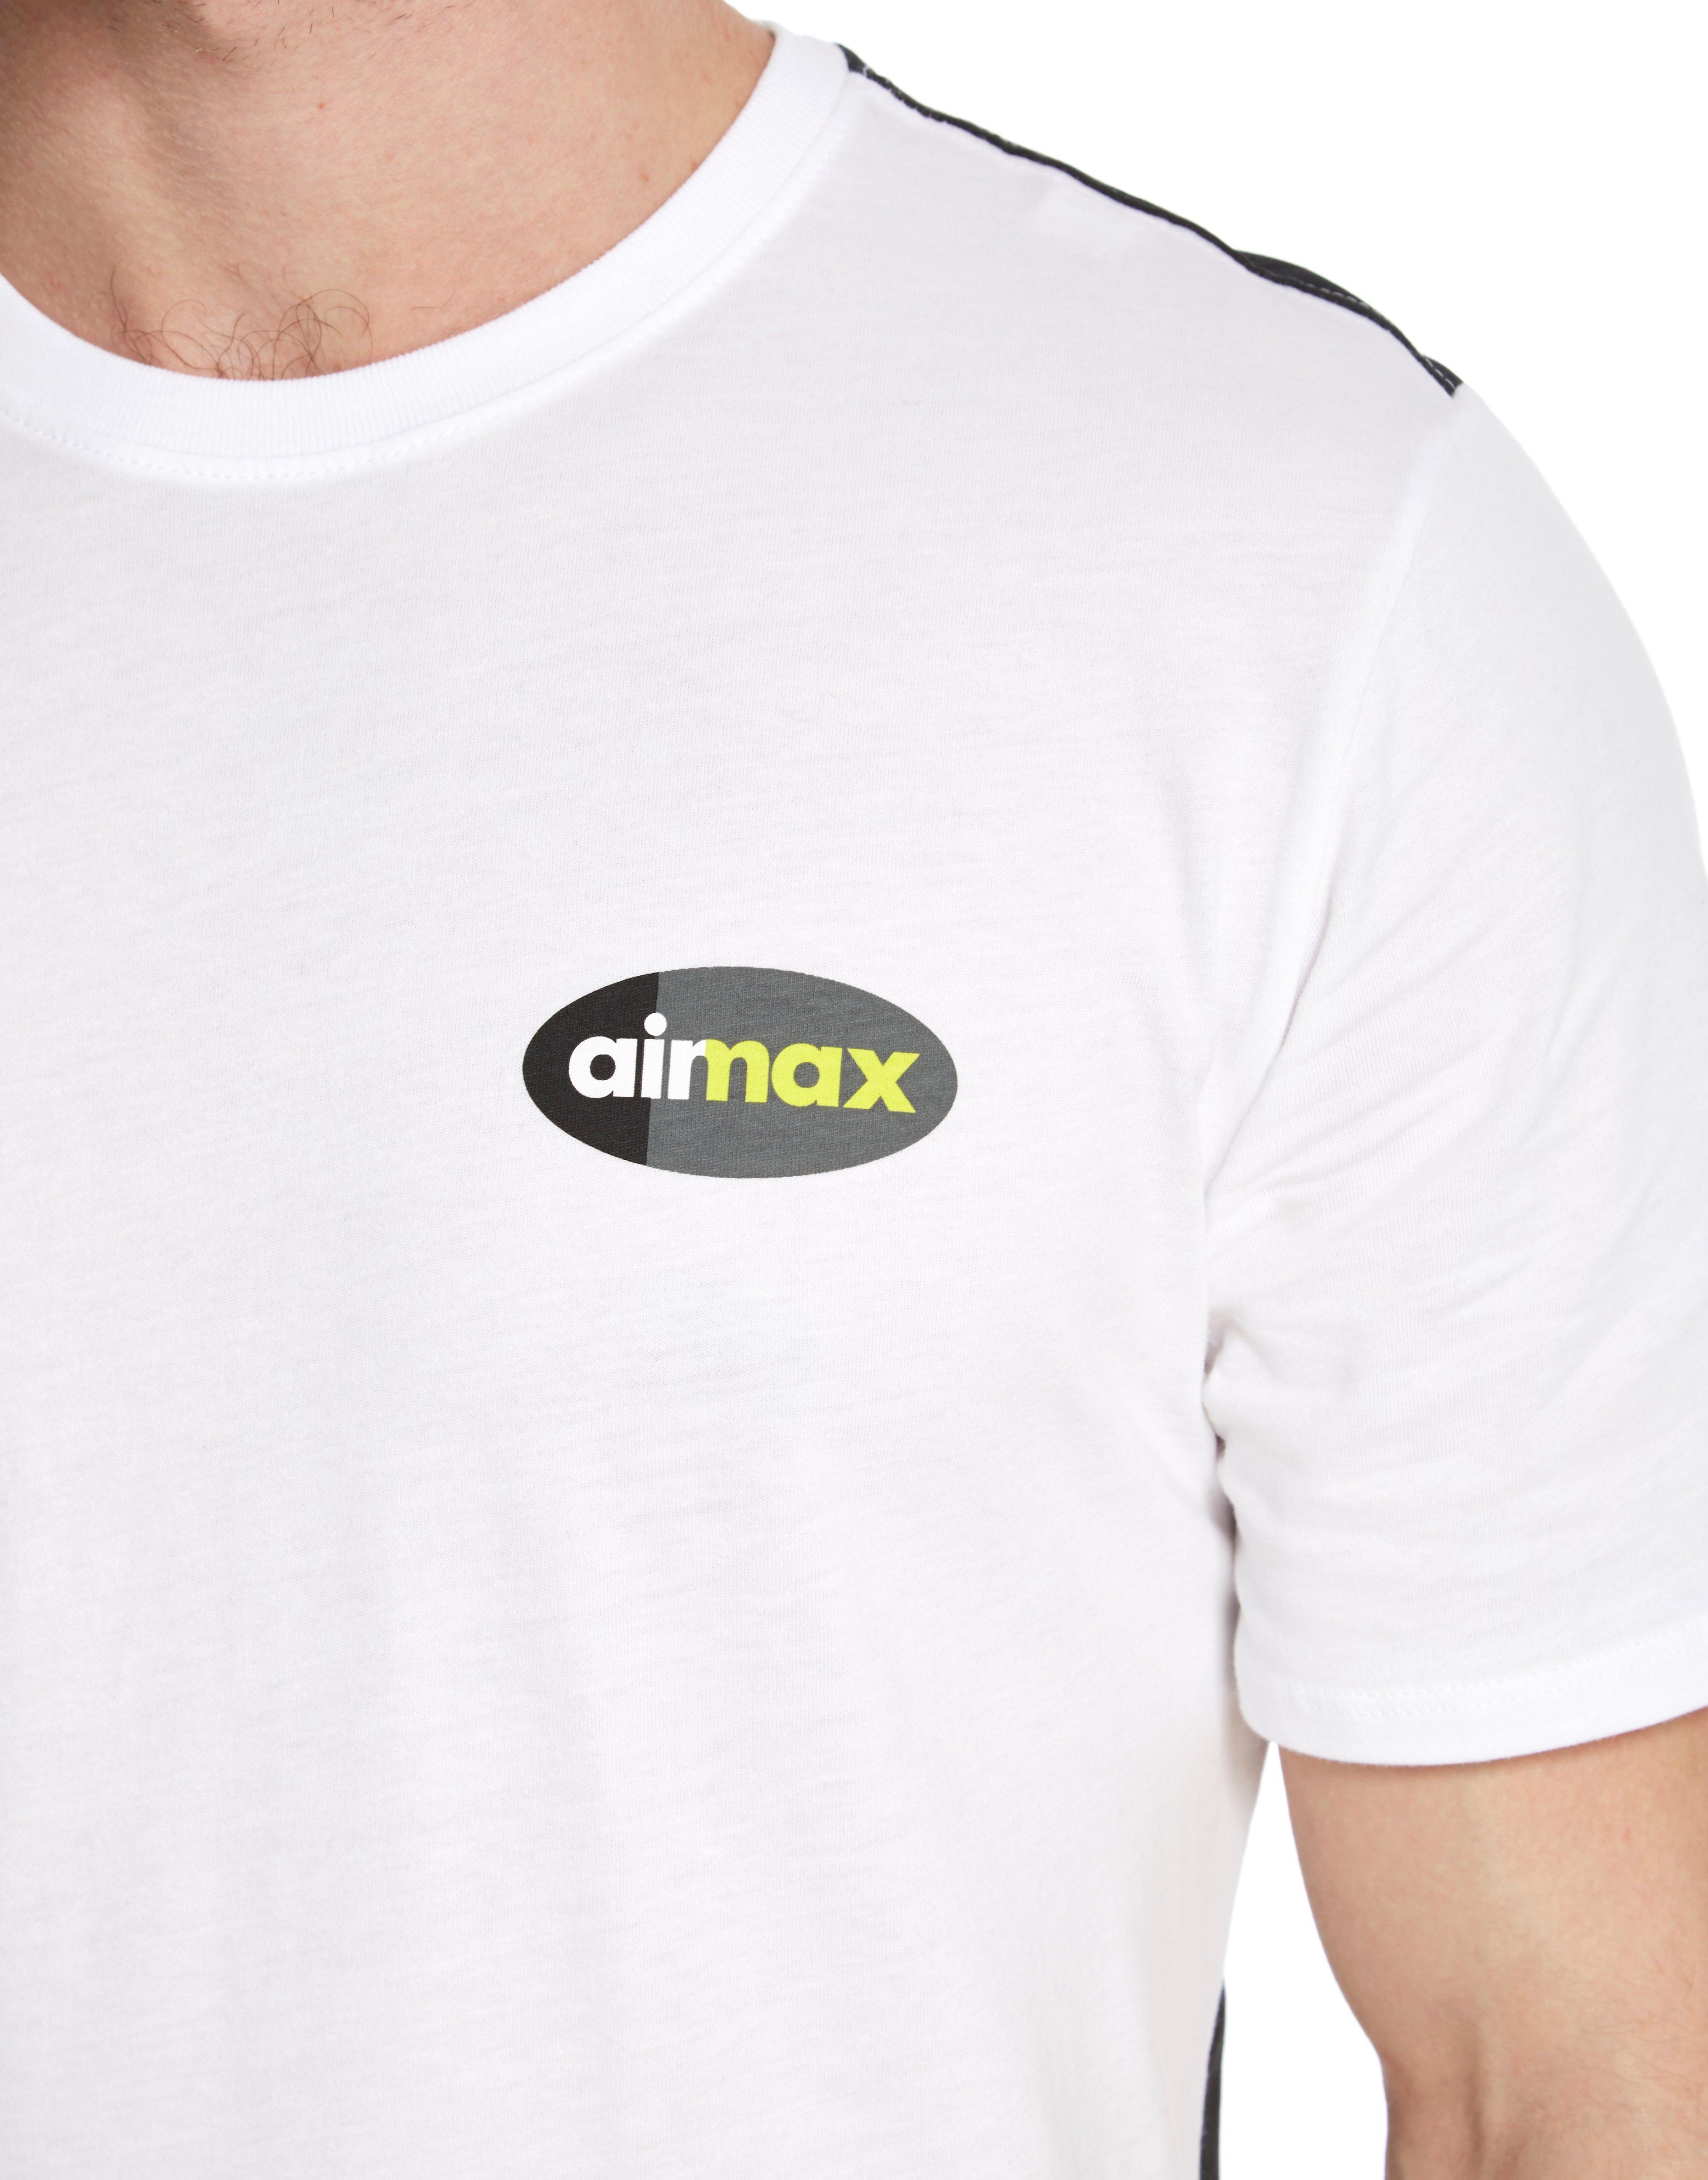 air max 95 tee shirts